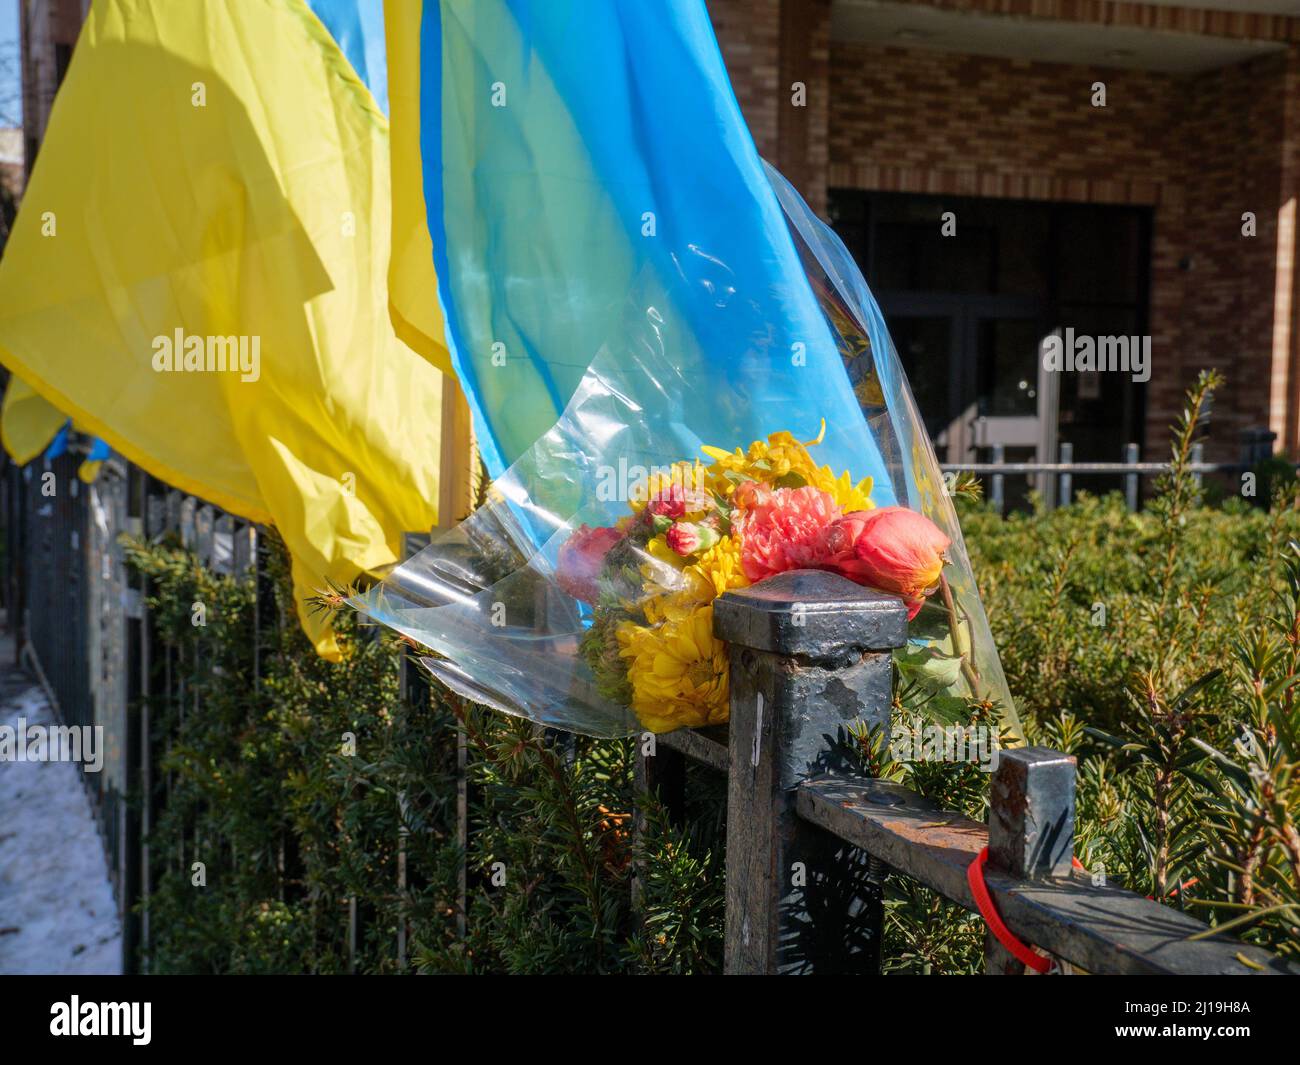 Ukrainian flag & flowers, Ukrainian Village neighborhood, Chicago, Illinois. Stock Photo